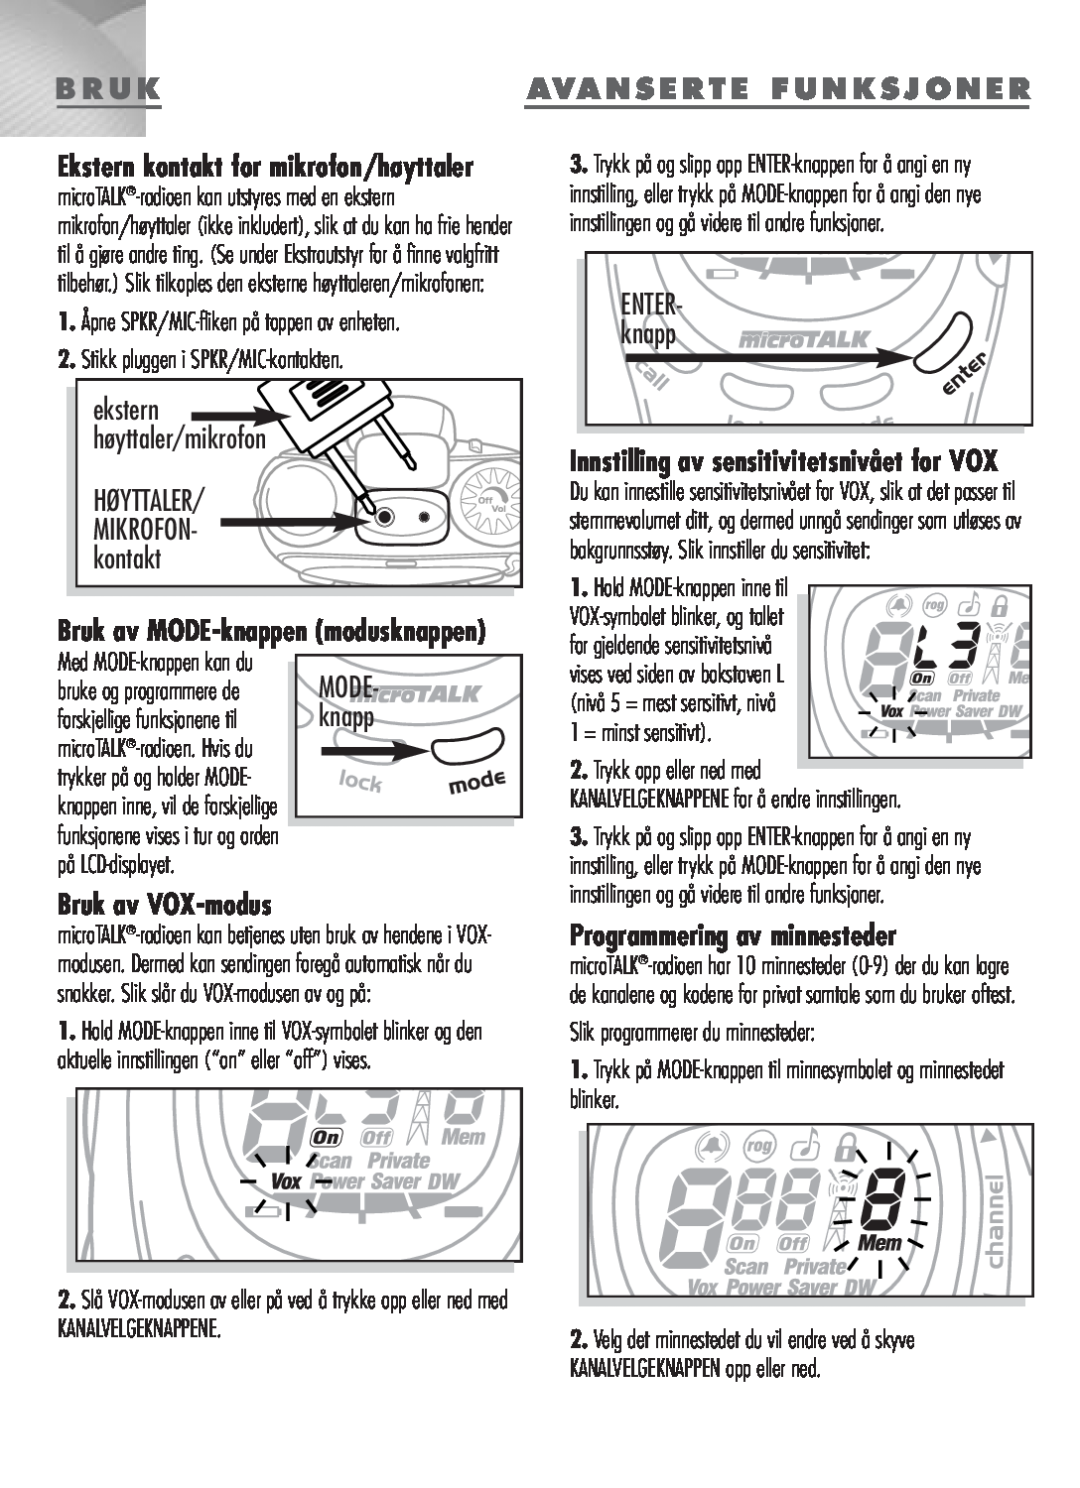 Cobra Electronics MT-900 manual HØYTTALER/ MIKROFON- kontakt, Bruk av VOX-modus, Avanserte Funksjoner, knapp 